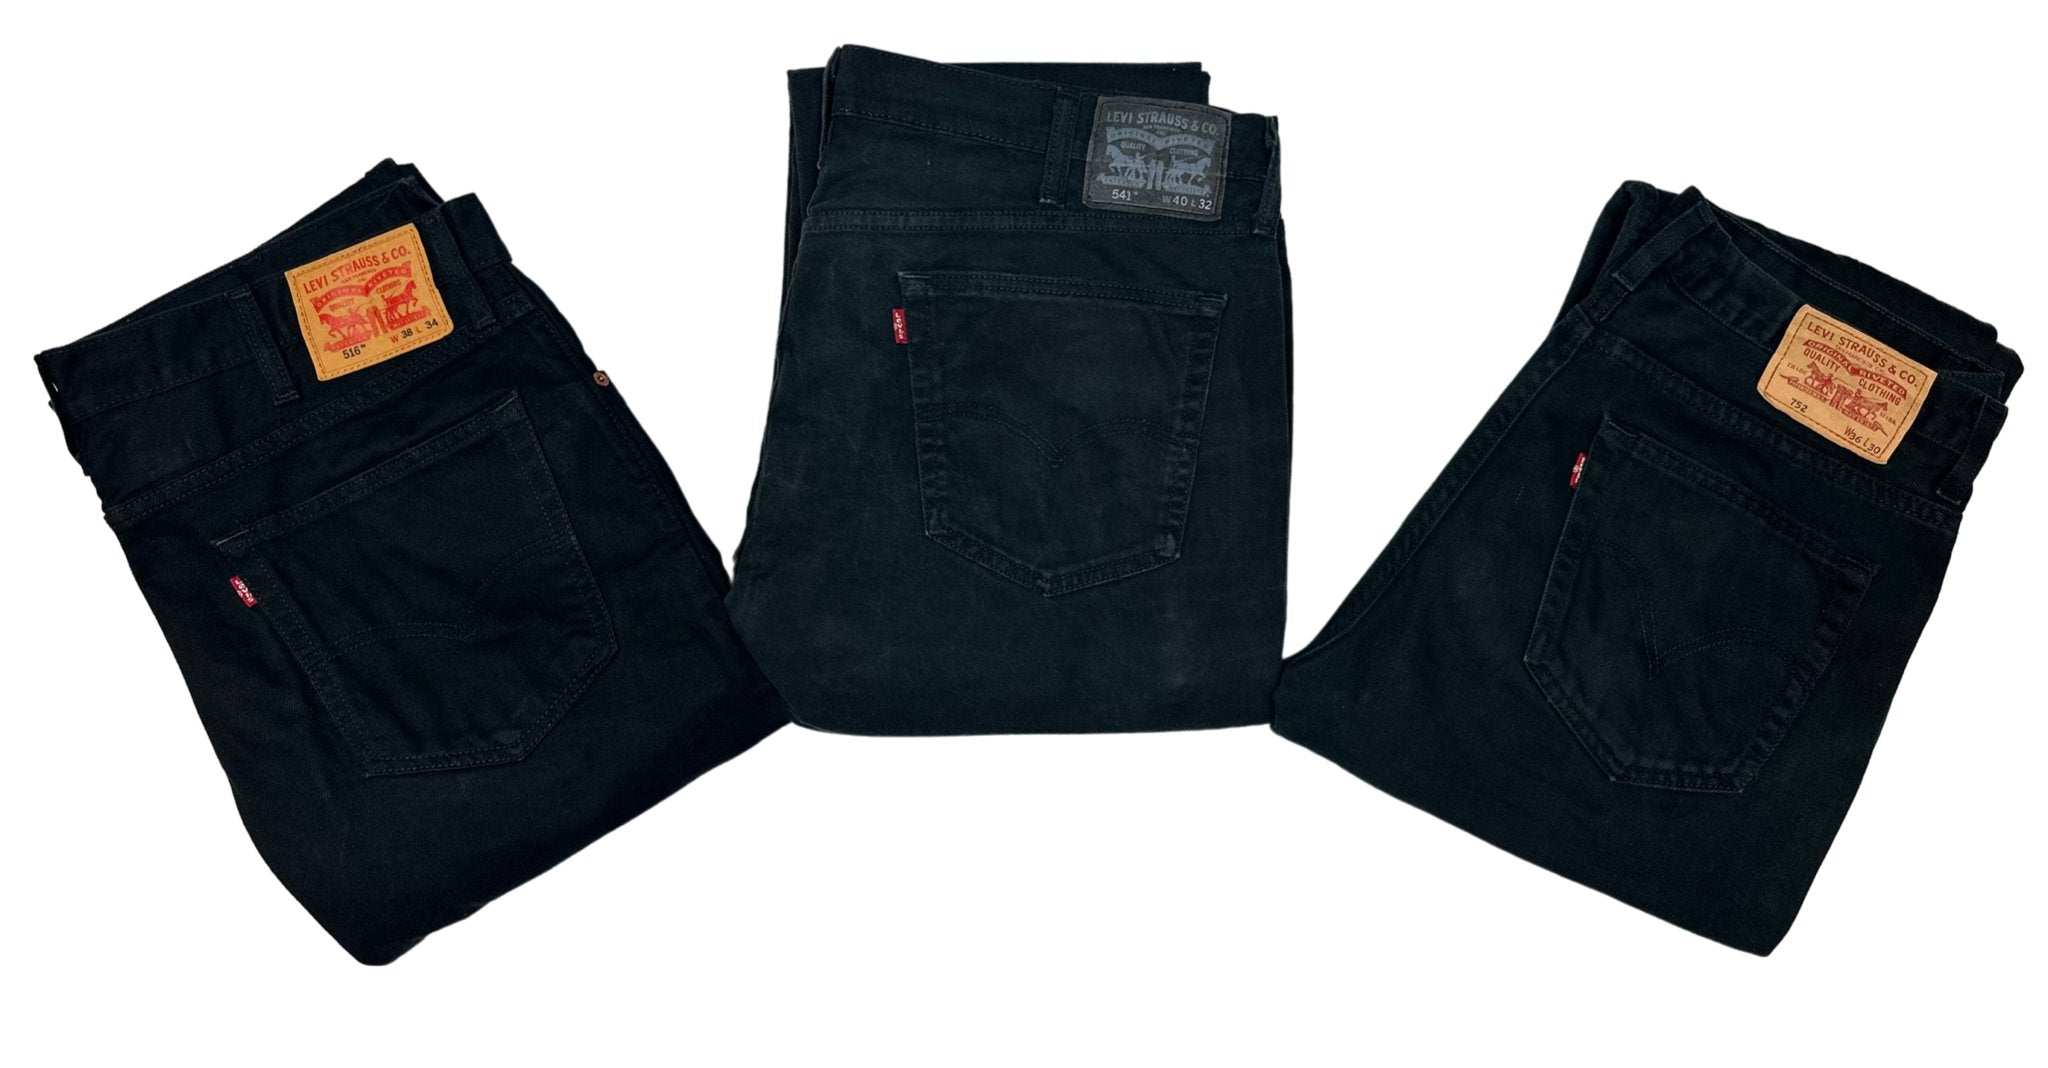 Vintage Levi's Black Jeans - Waist 28 - Length 30 - Vintage Superstore Online